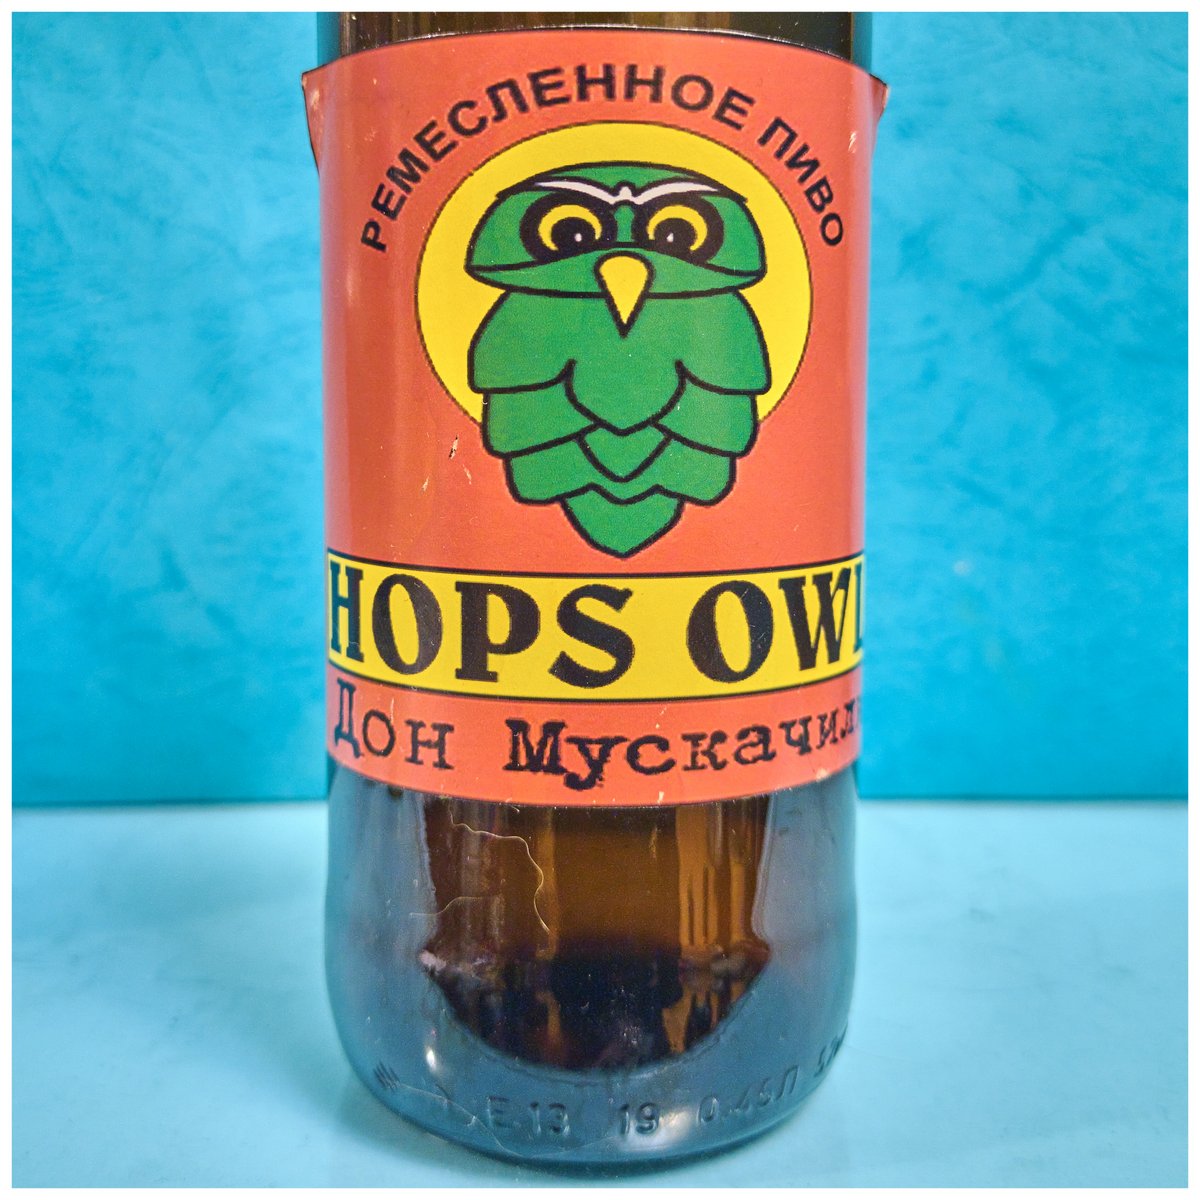 Hops Owl Дон Мускачино 2019-12-2